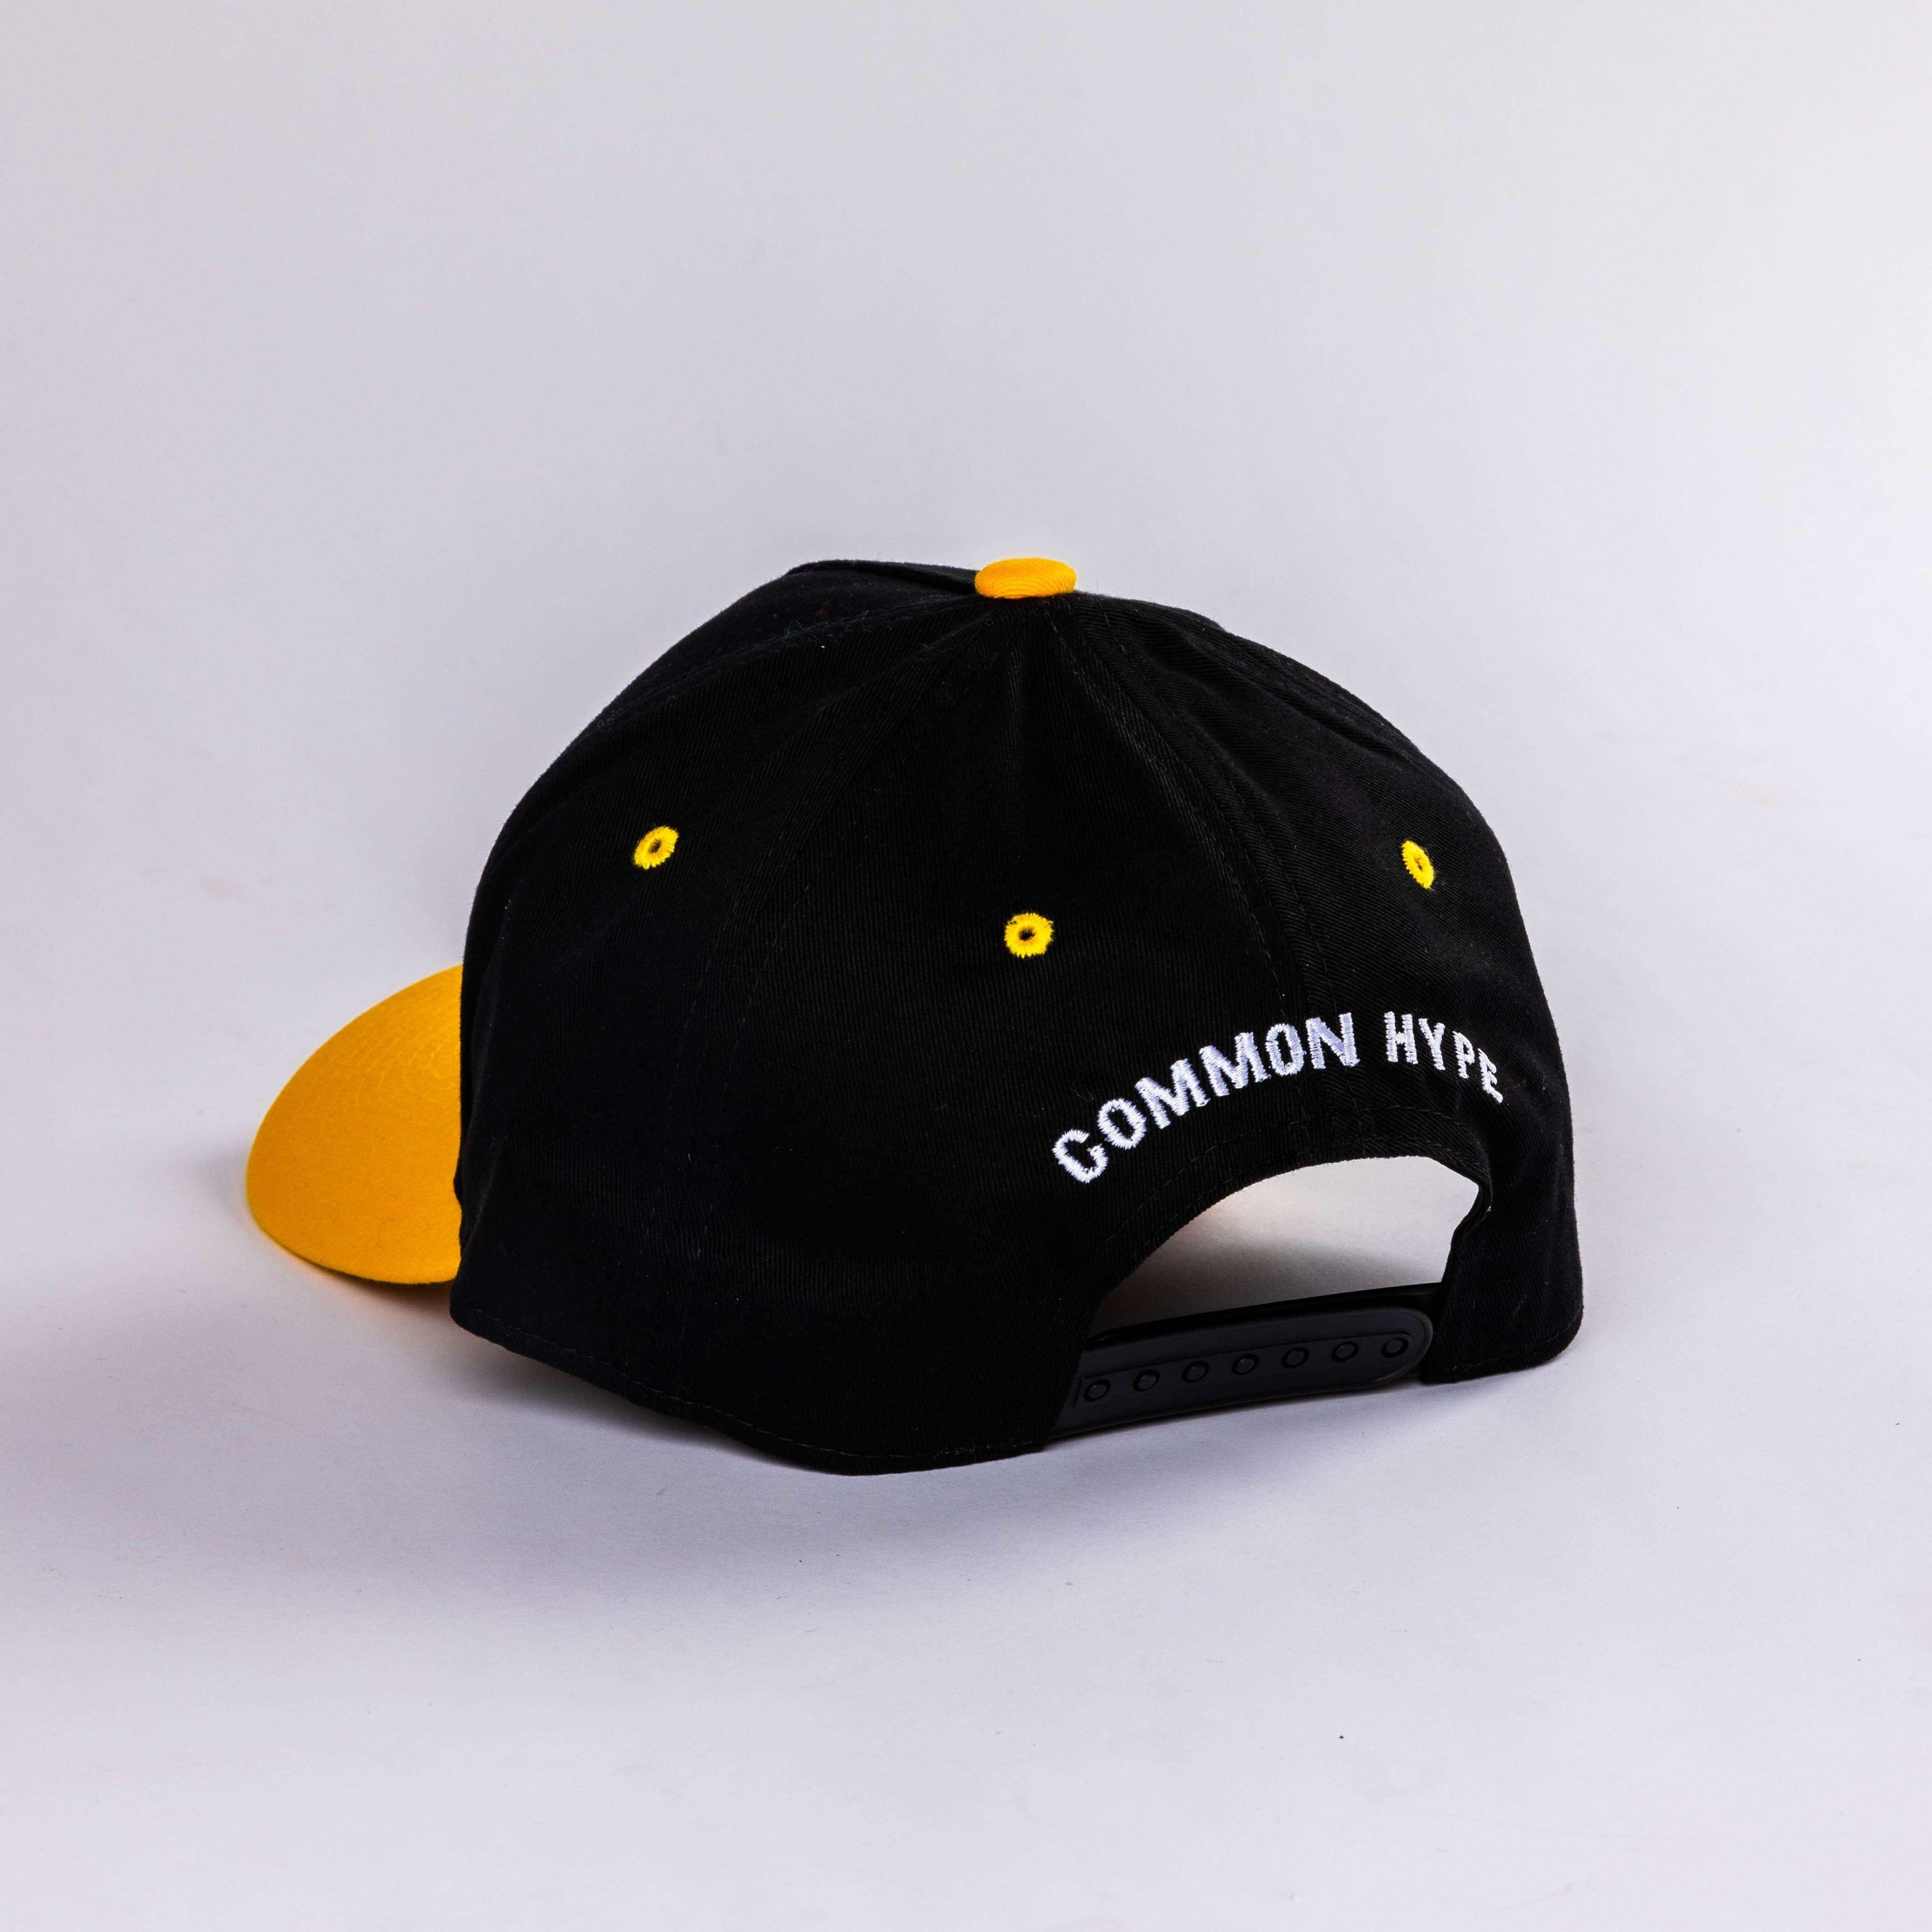 Common Hype Black/Yellow Hat